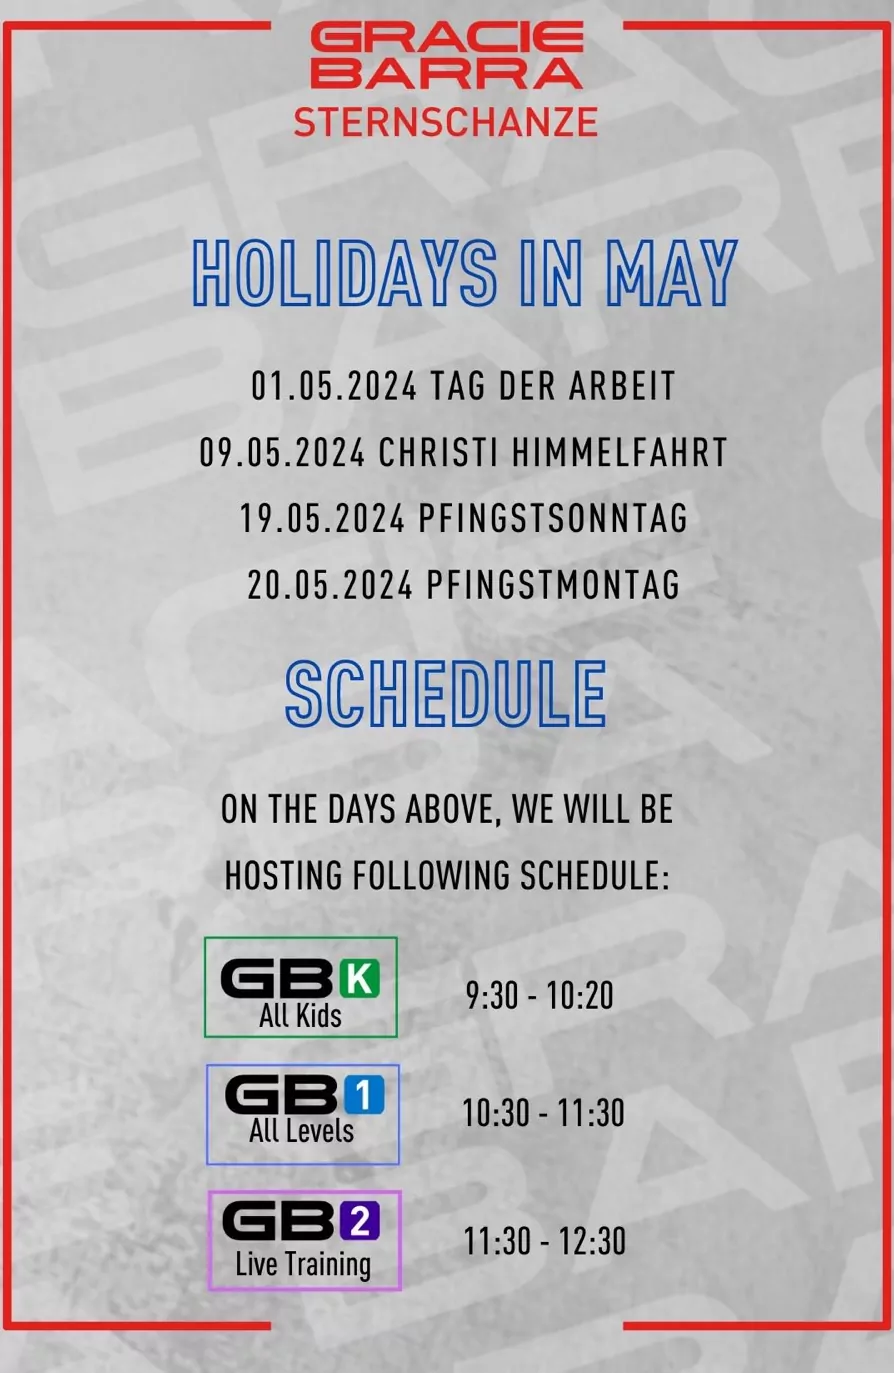 Holidays in May Training Schedule Gracie Barra Sternschanze